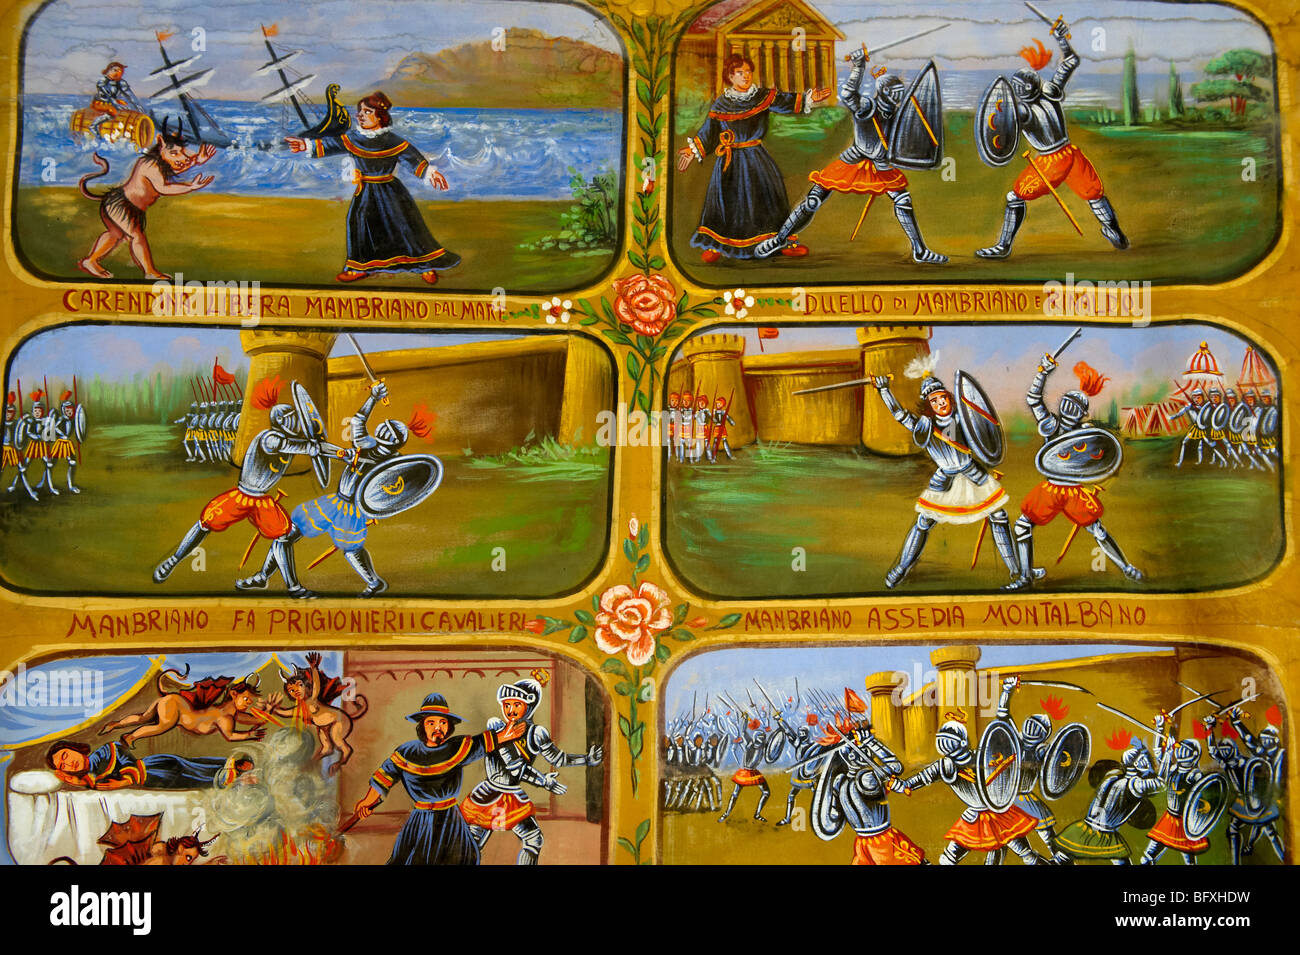 Folk art peintures illustrant les récits historiques de la Sicile, Palerme, Sicile Marionnette museum Banque D'Images